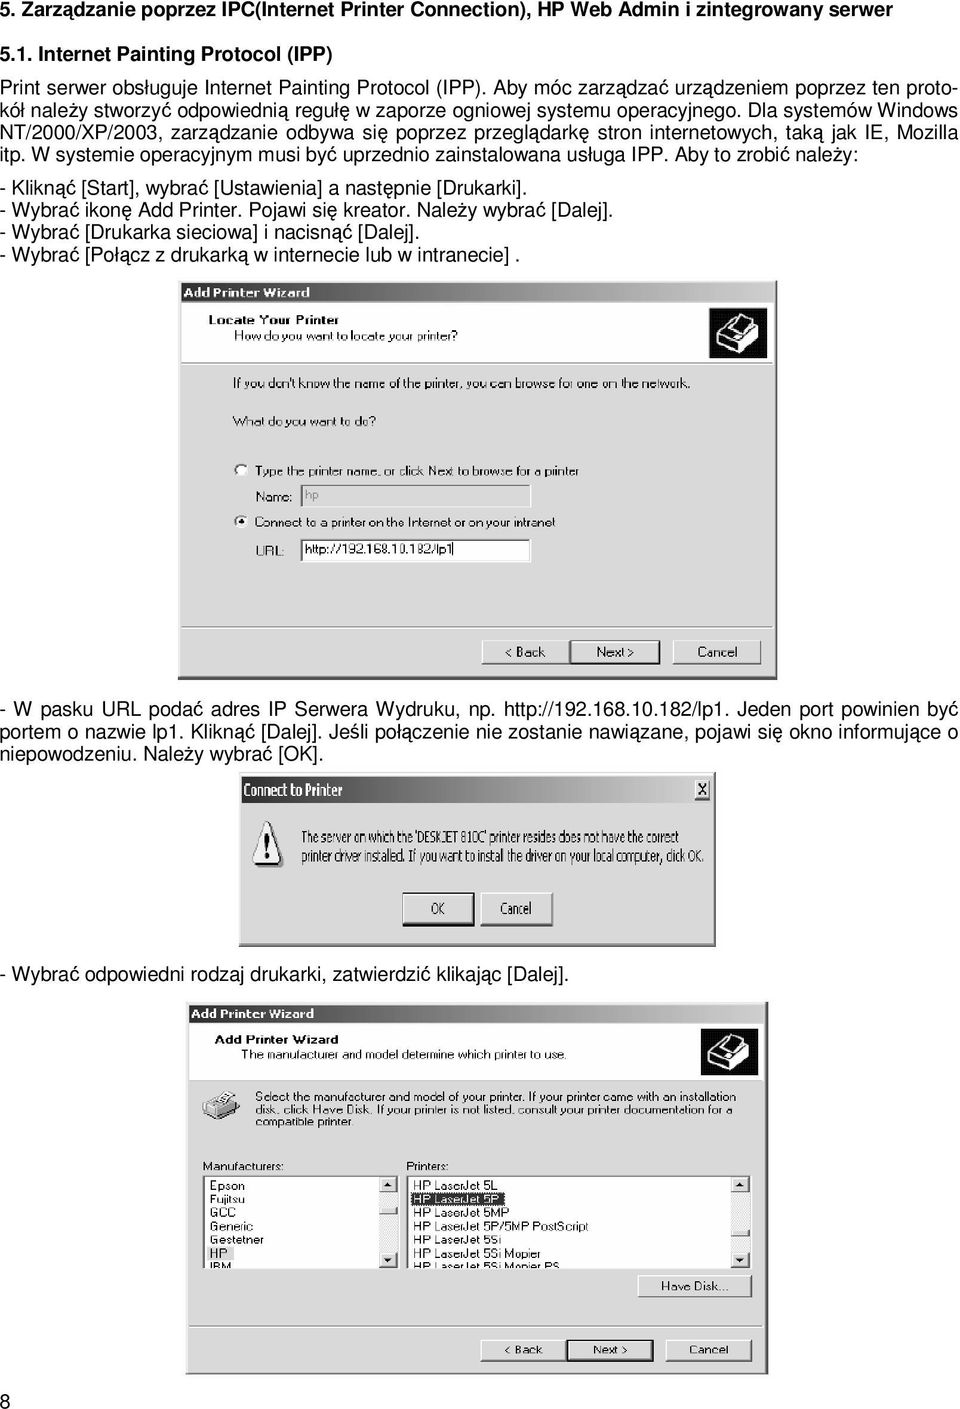 Dla systemów Windows NT/2000/XP/2003, zarządzanie odbywa się poprzez przeglądarkę stron internetowych, taką jak IE, Mozilla itp. W systemie operacyjnym musi być uprzednio zainstalowana usługa IPP.